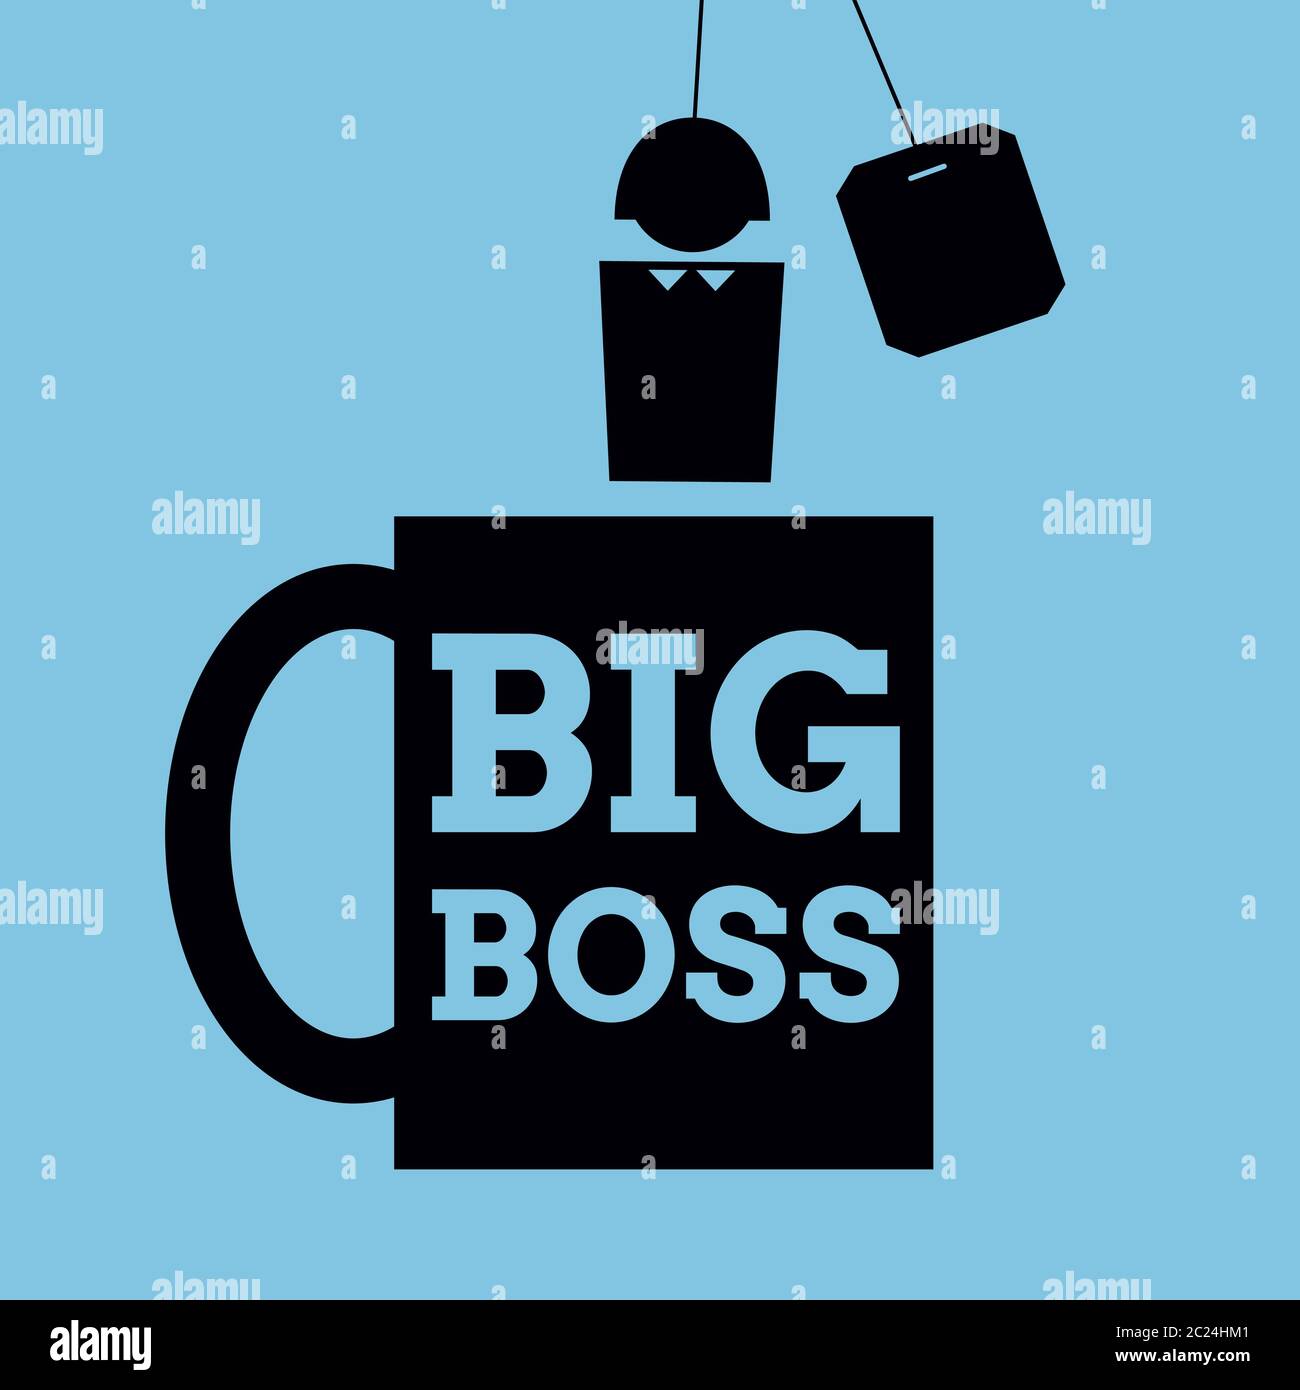 Illustrazione semplificata del vettore. Icona di una tazza con le parole 'Big Boss' scritte su di essa e una persona invece di teabag. Formato quadrato. Nero su blu. Illustrazione Vettoriale